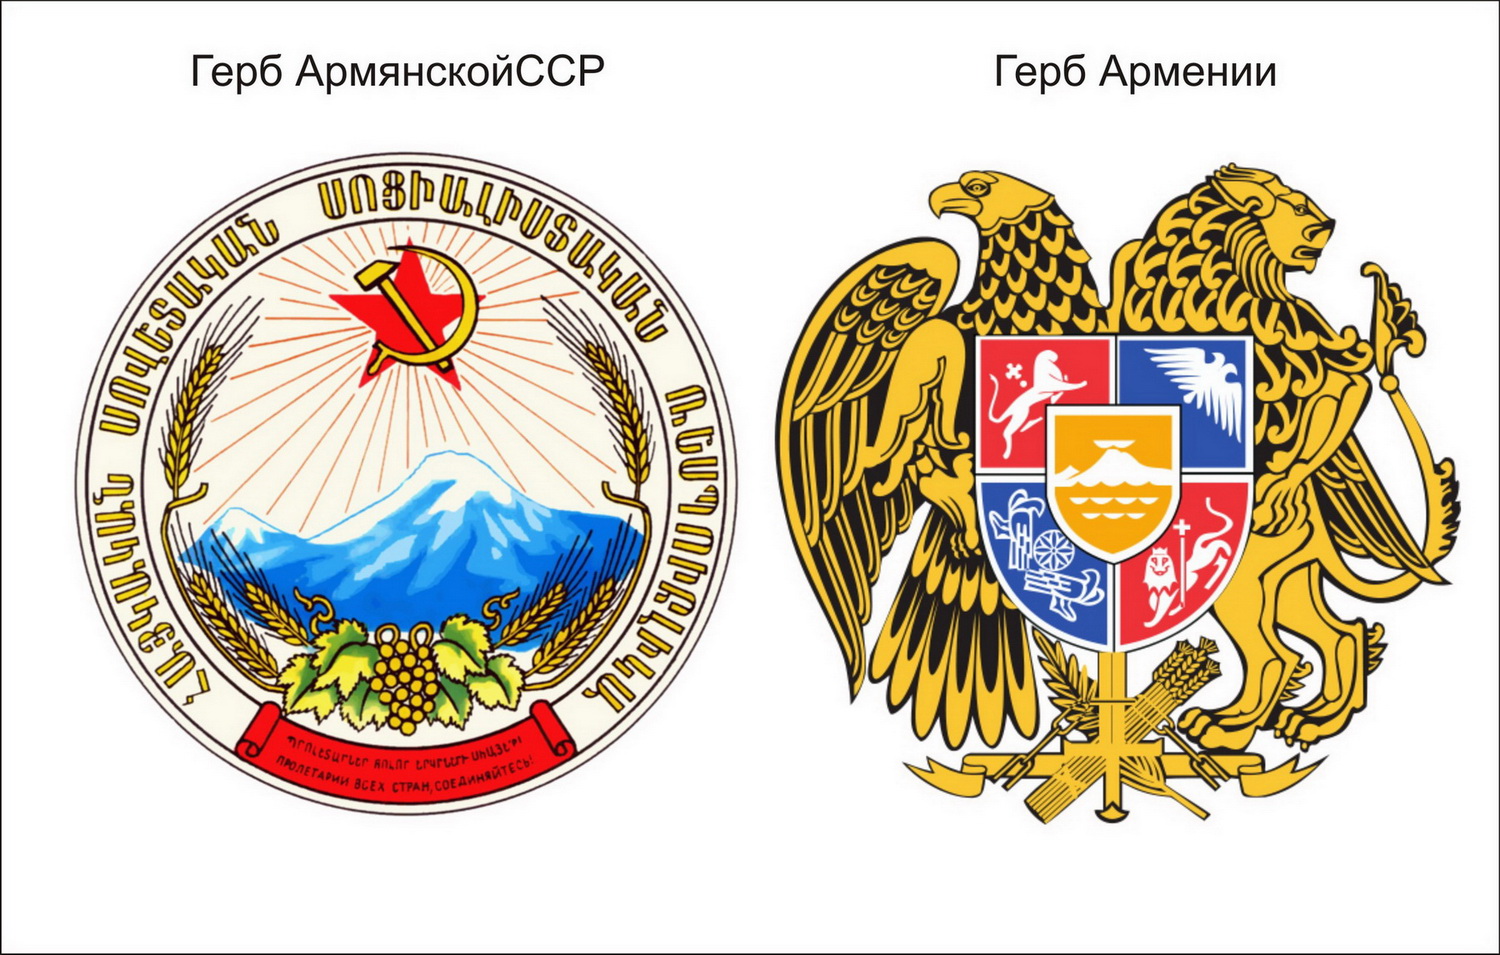 Герб Республики Армения в СССР